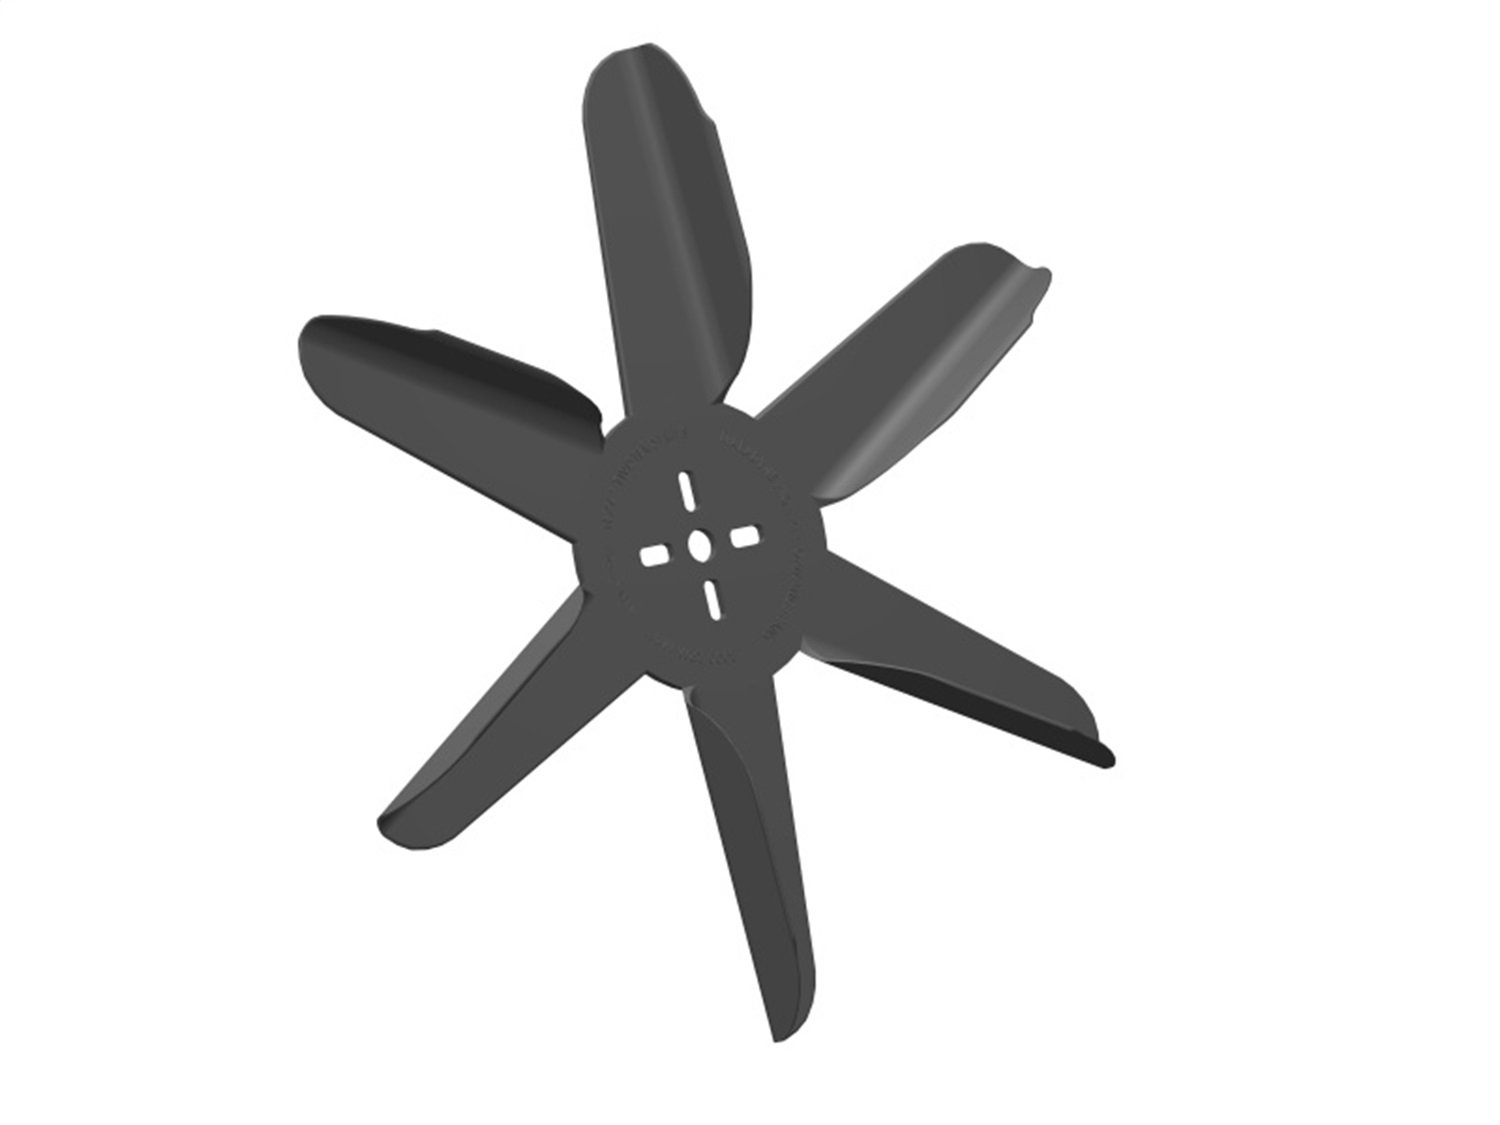 Texas Twister Engine-Driven Flex Fan Blade, Diameter: 17 in.